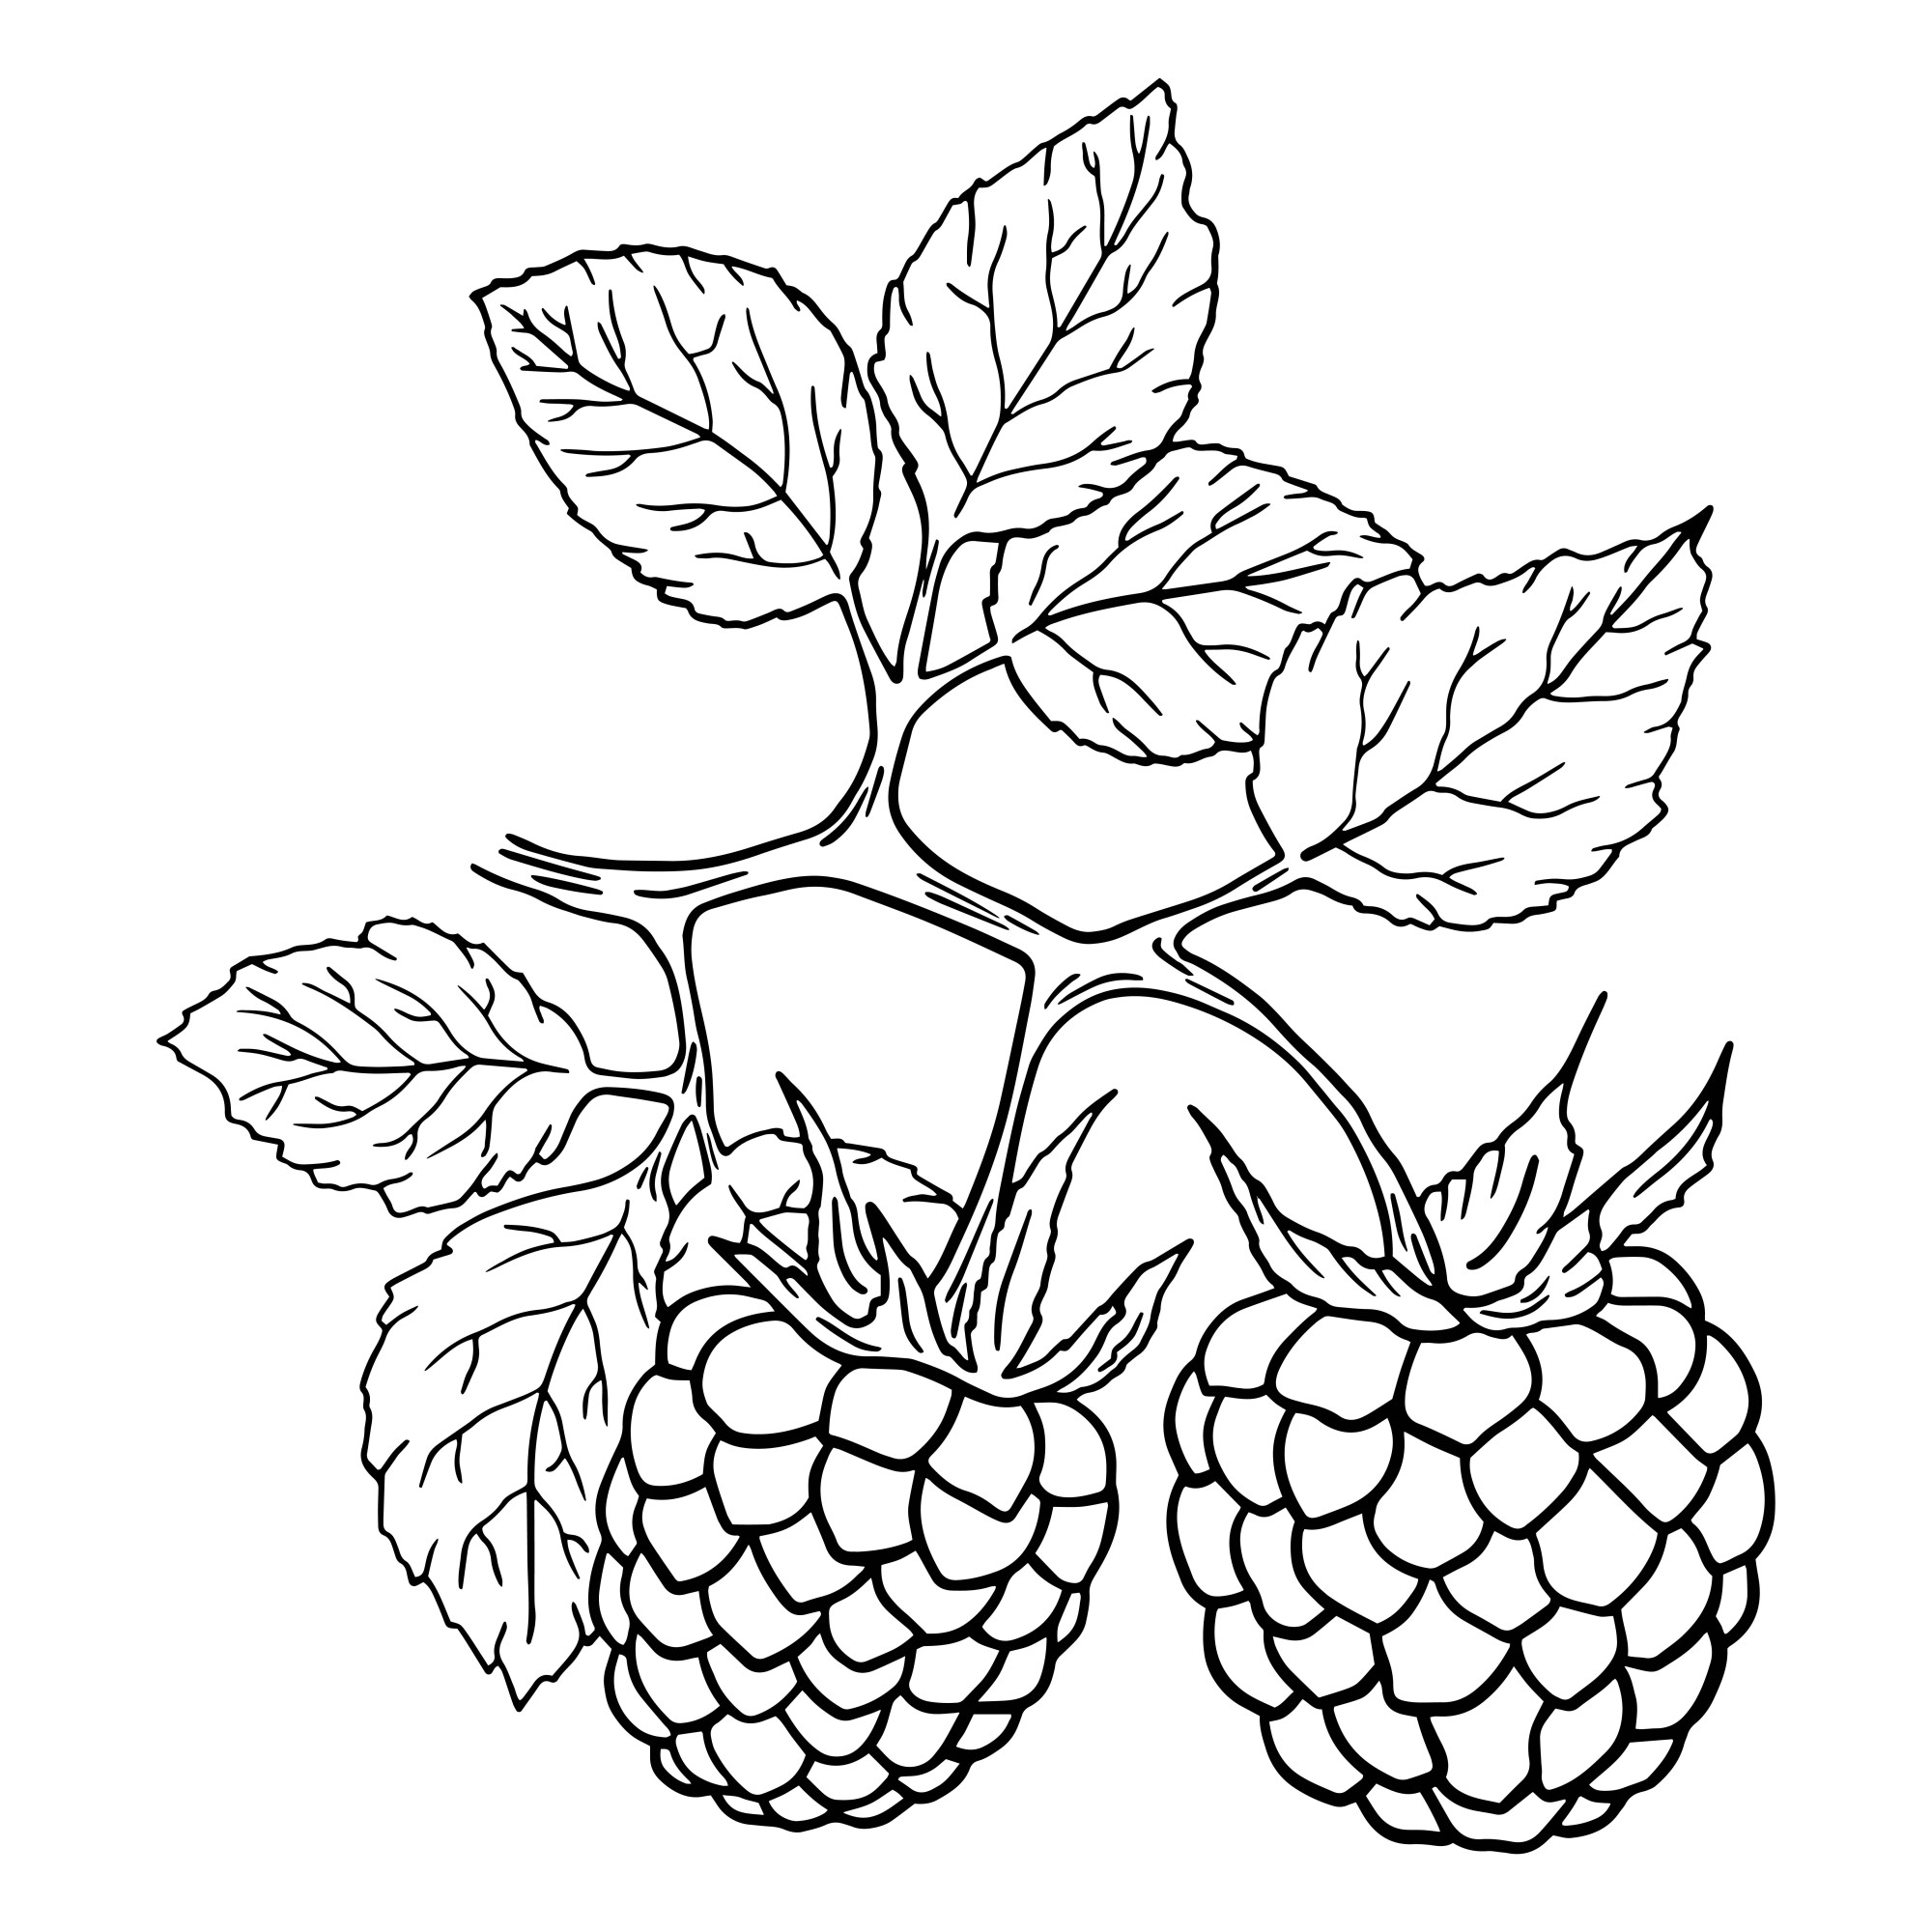 Раскраска для детей: ягоды малины на ветке с листьями